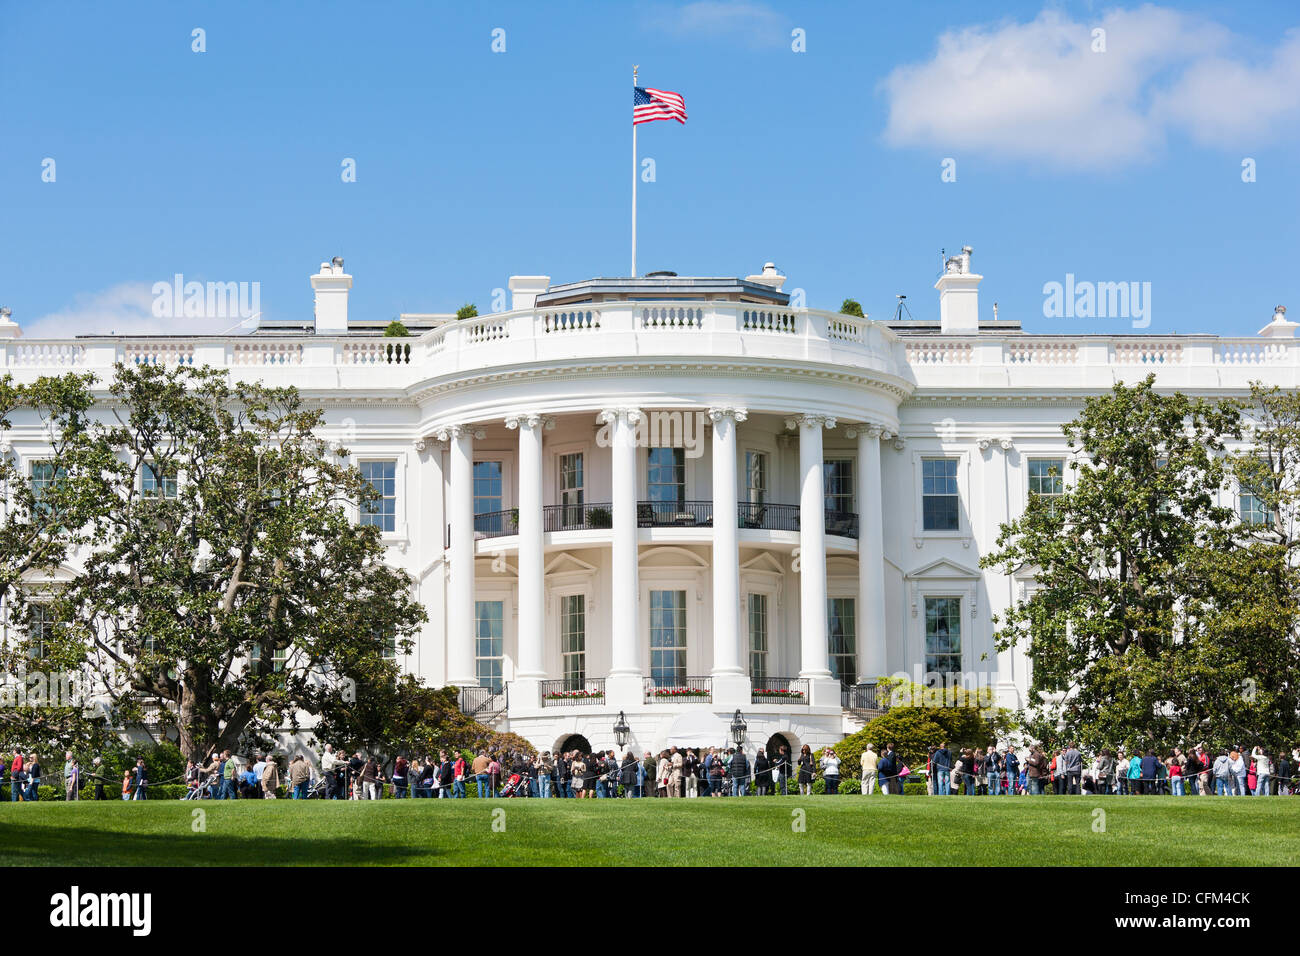 Das Weiße Haus Frühling Garten Touren. Blick von der Masse über dem Süden Rasen. Offener Garten Tour Washington D.C Stockfoto